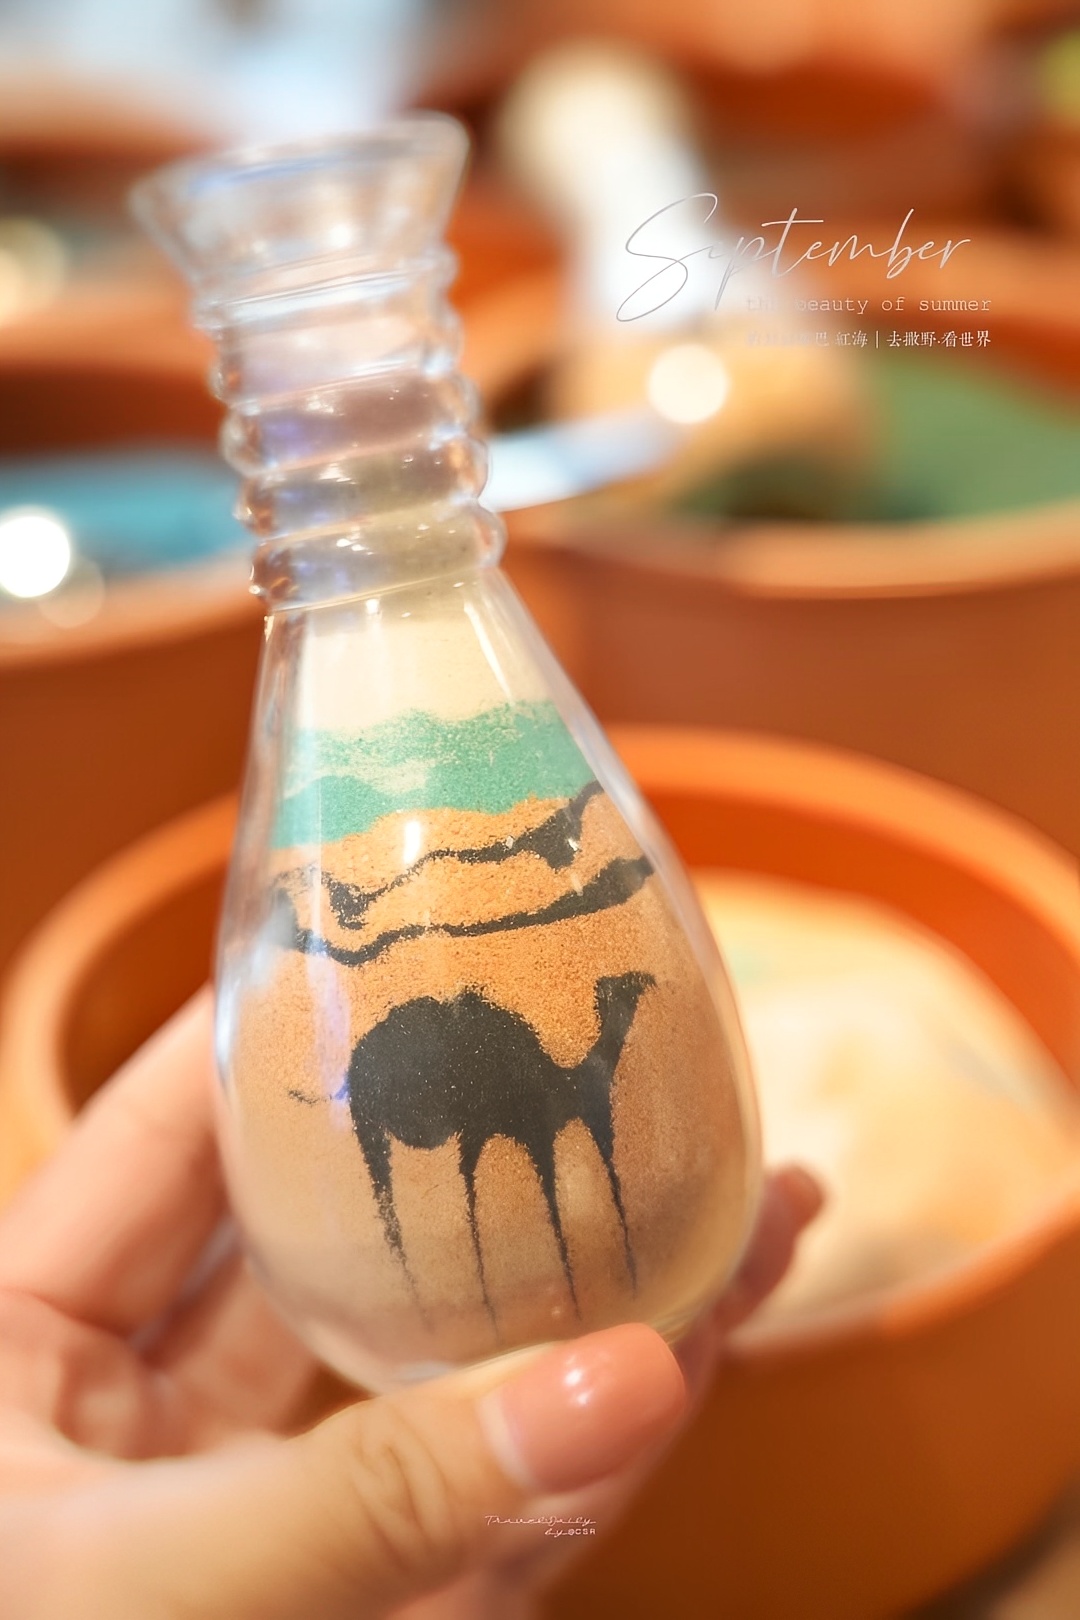 约旦亚喀巴sand art 园区体验瓶子沙画